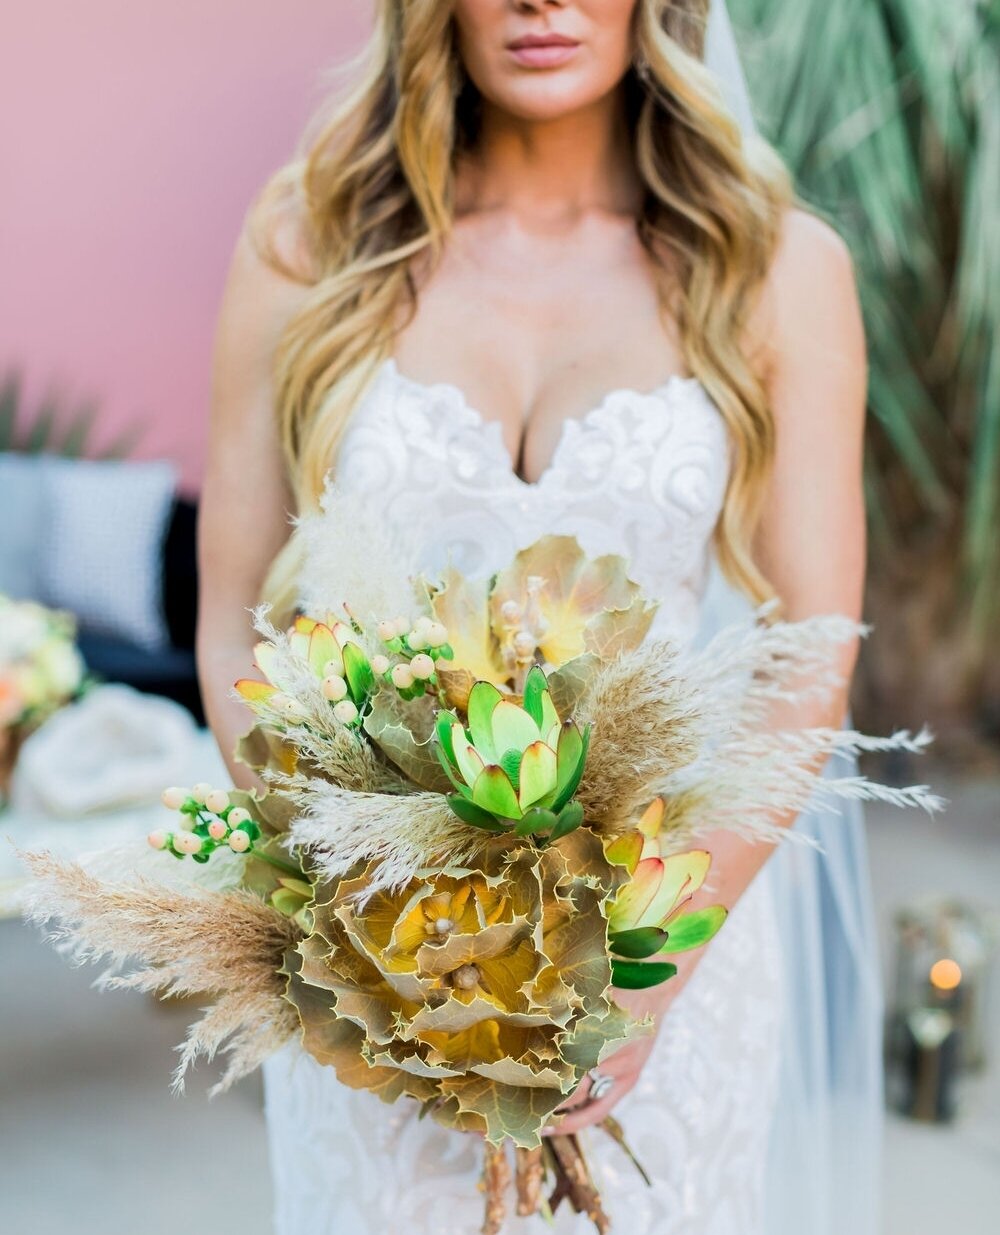 Pretty pretty bouquet for a pretty pretty bride